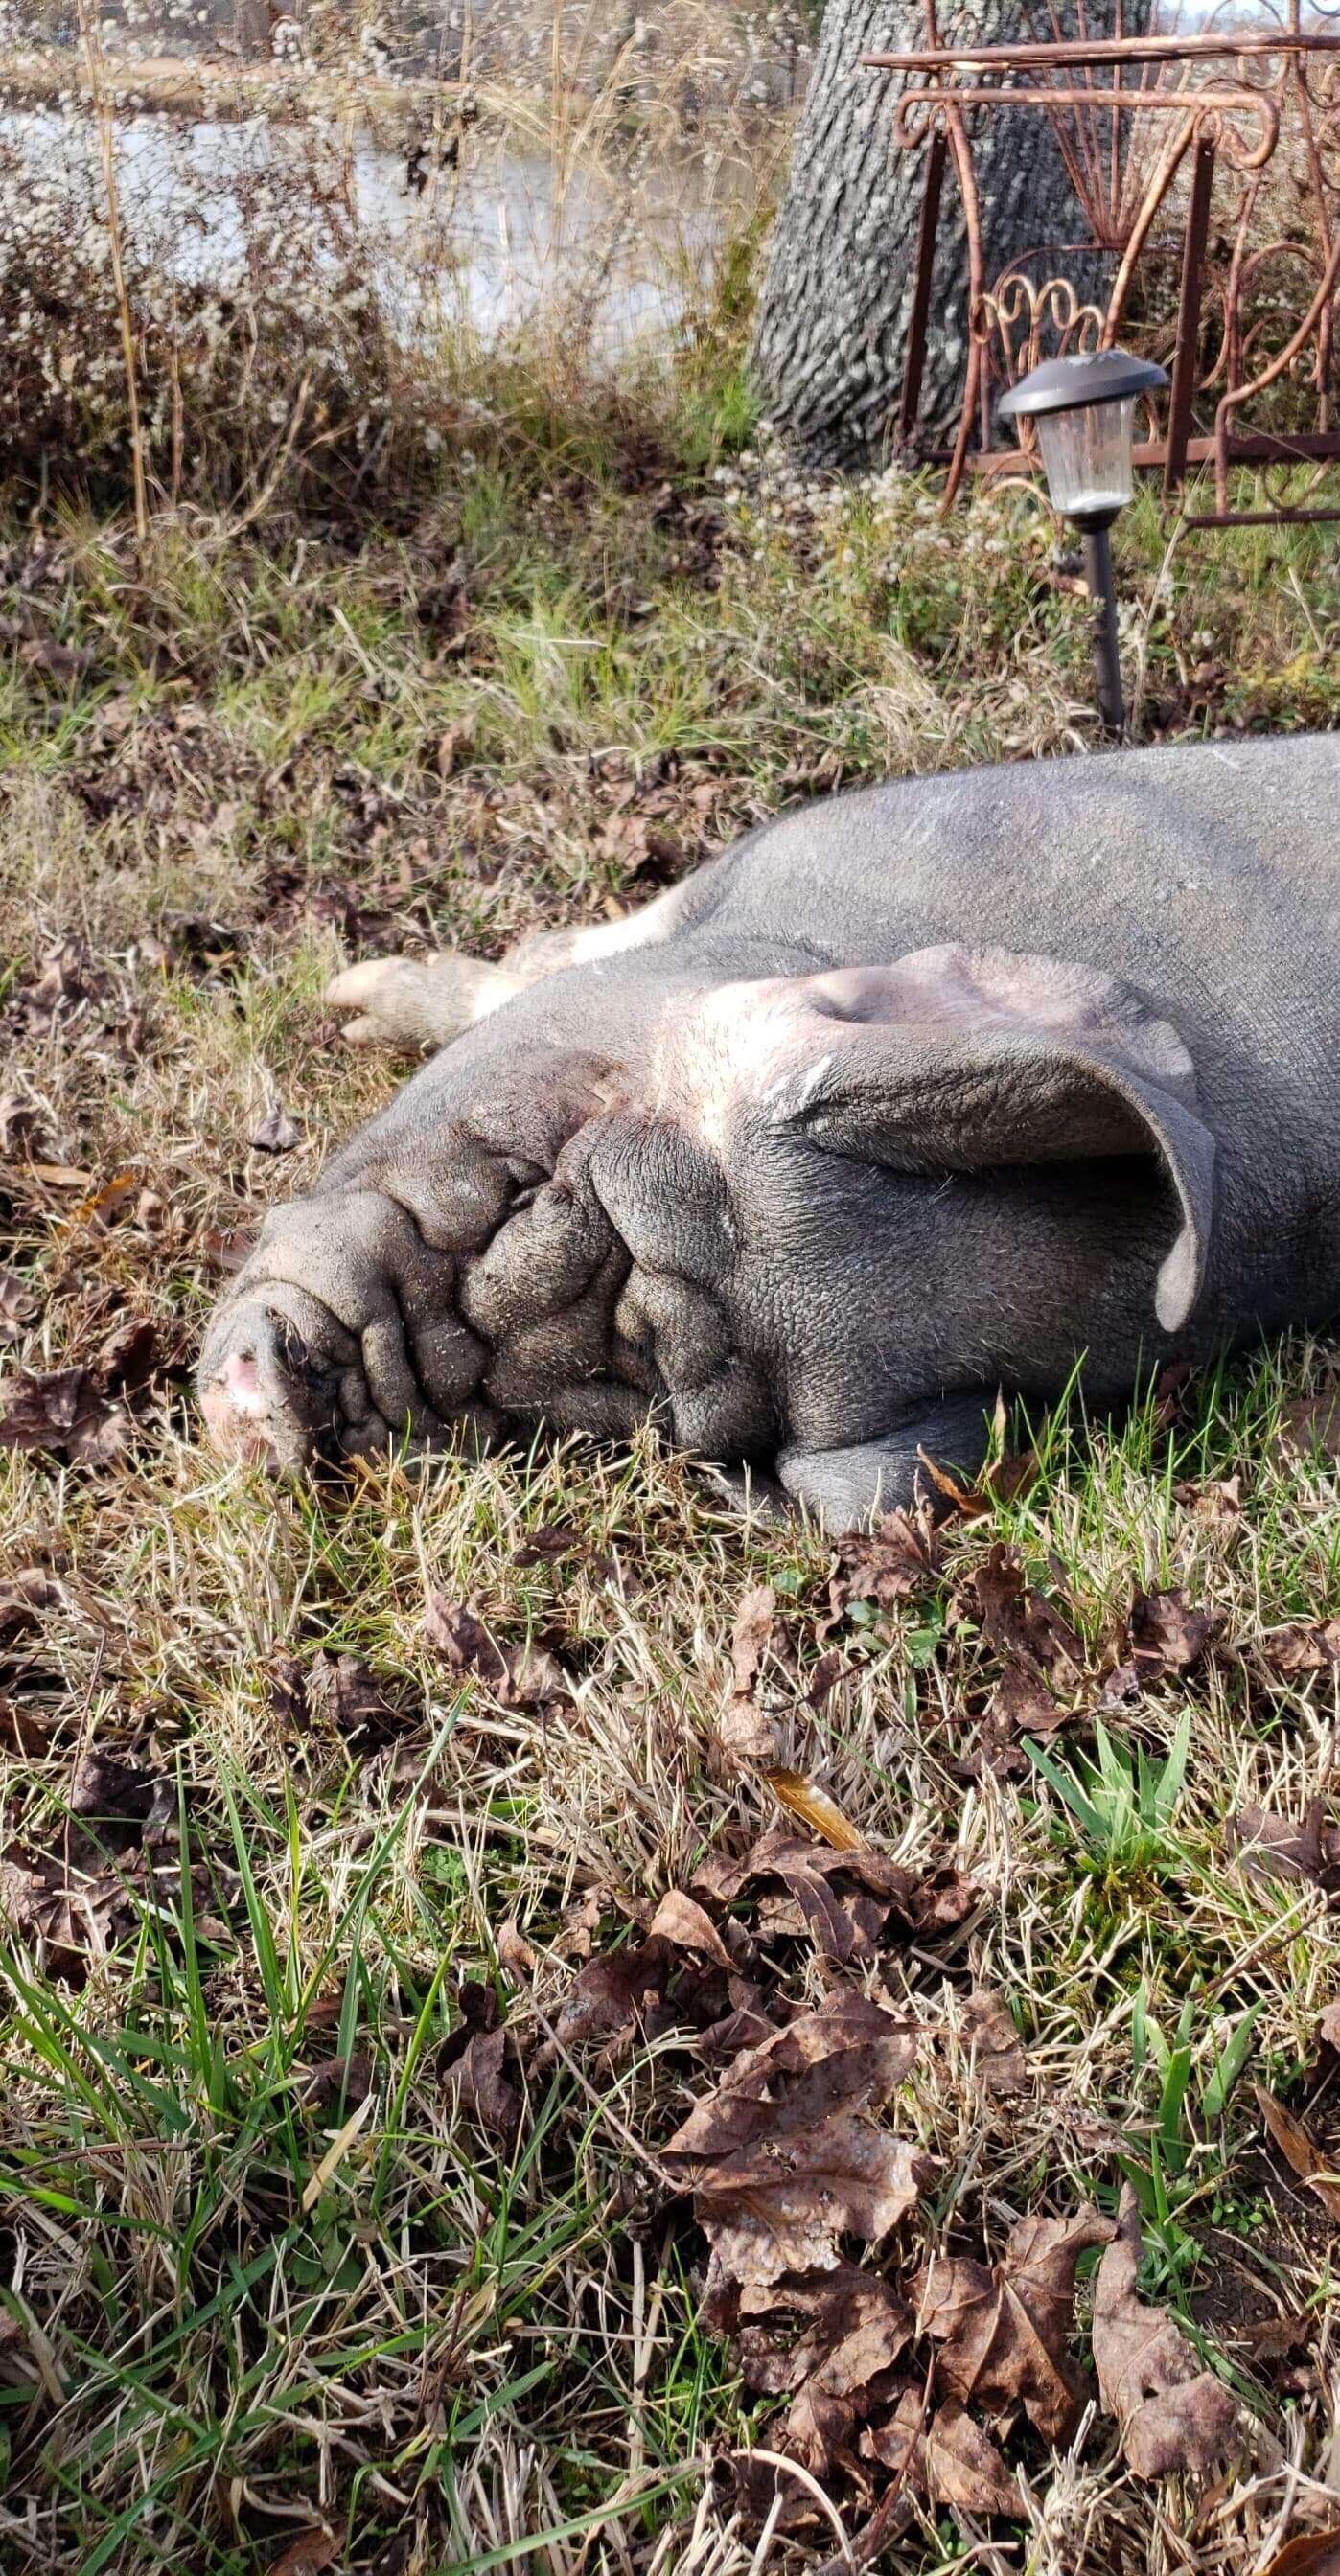 Pig lying in grass